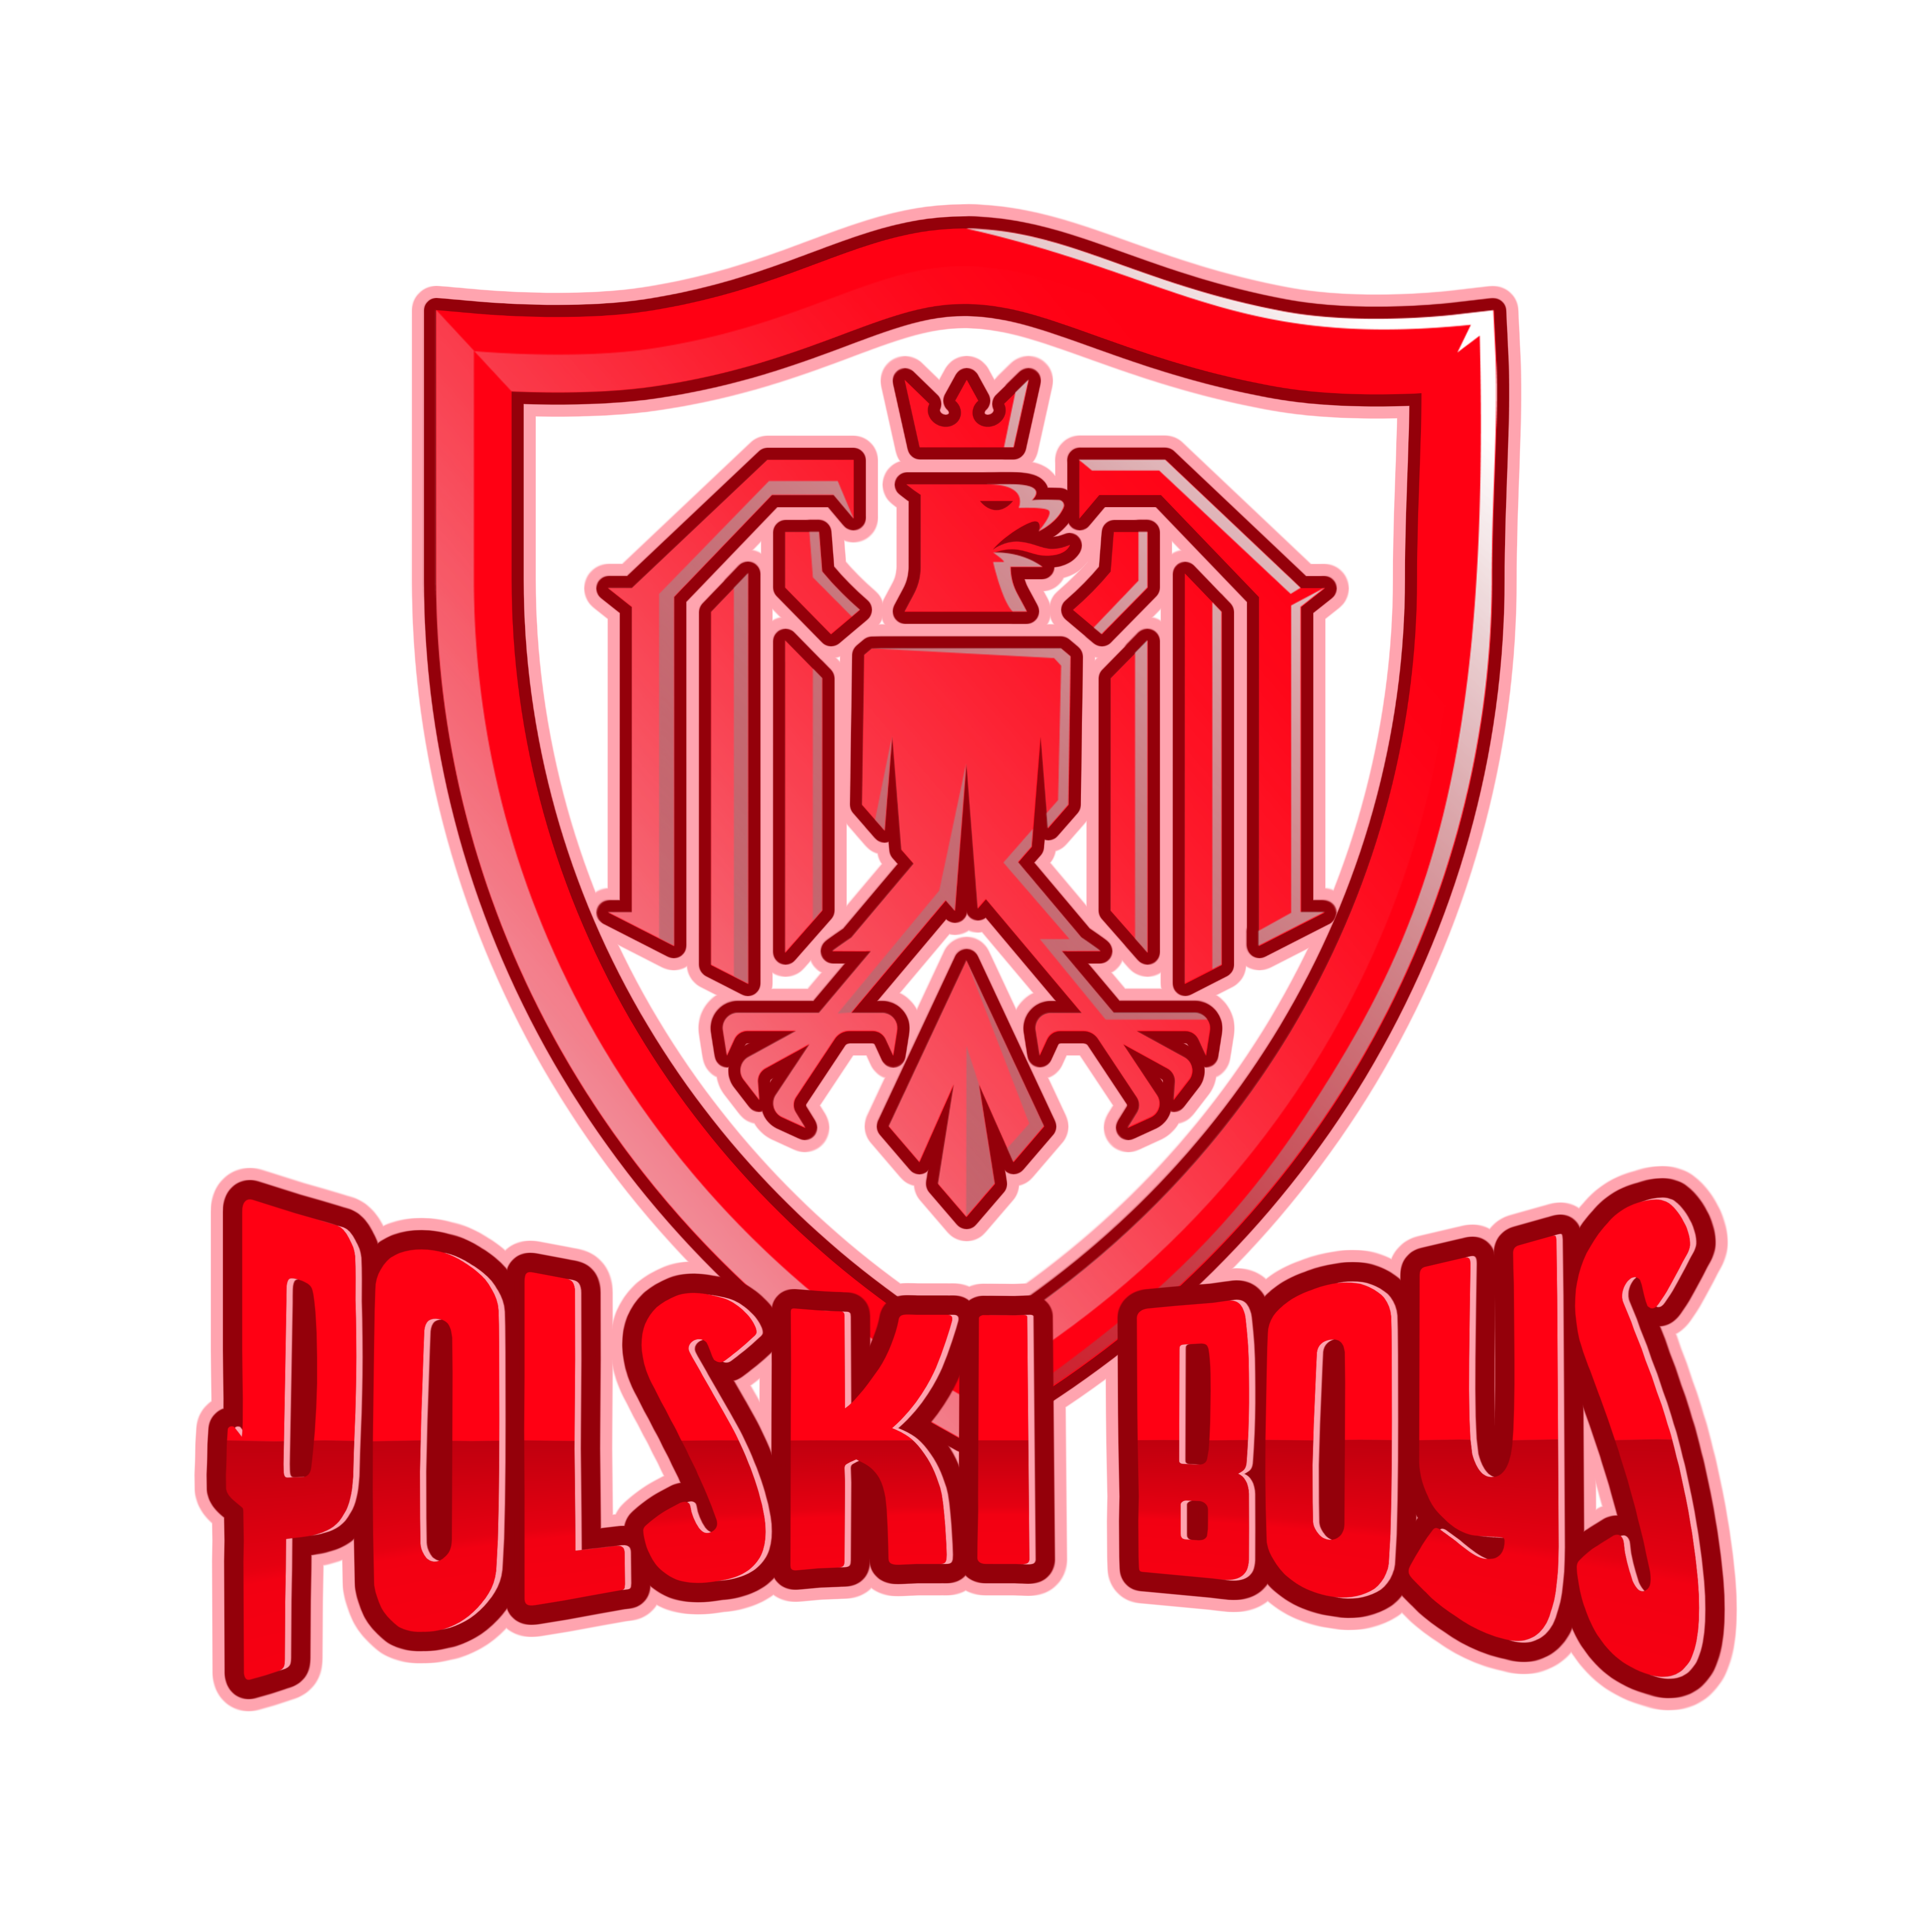 Polski%20Boys%20logo_20230329-131633.png